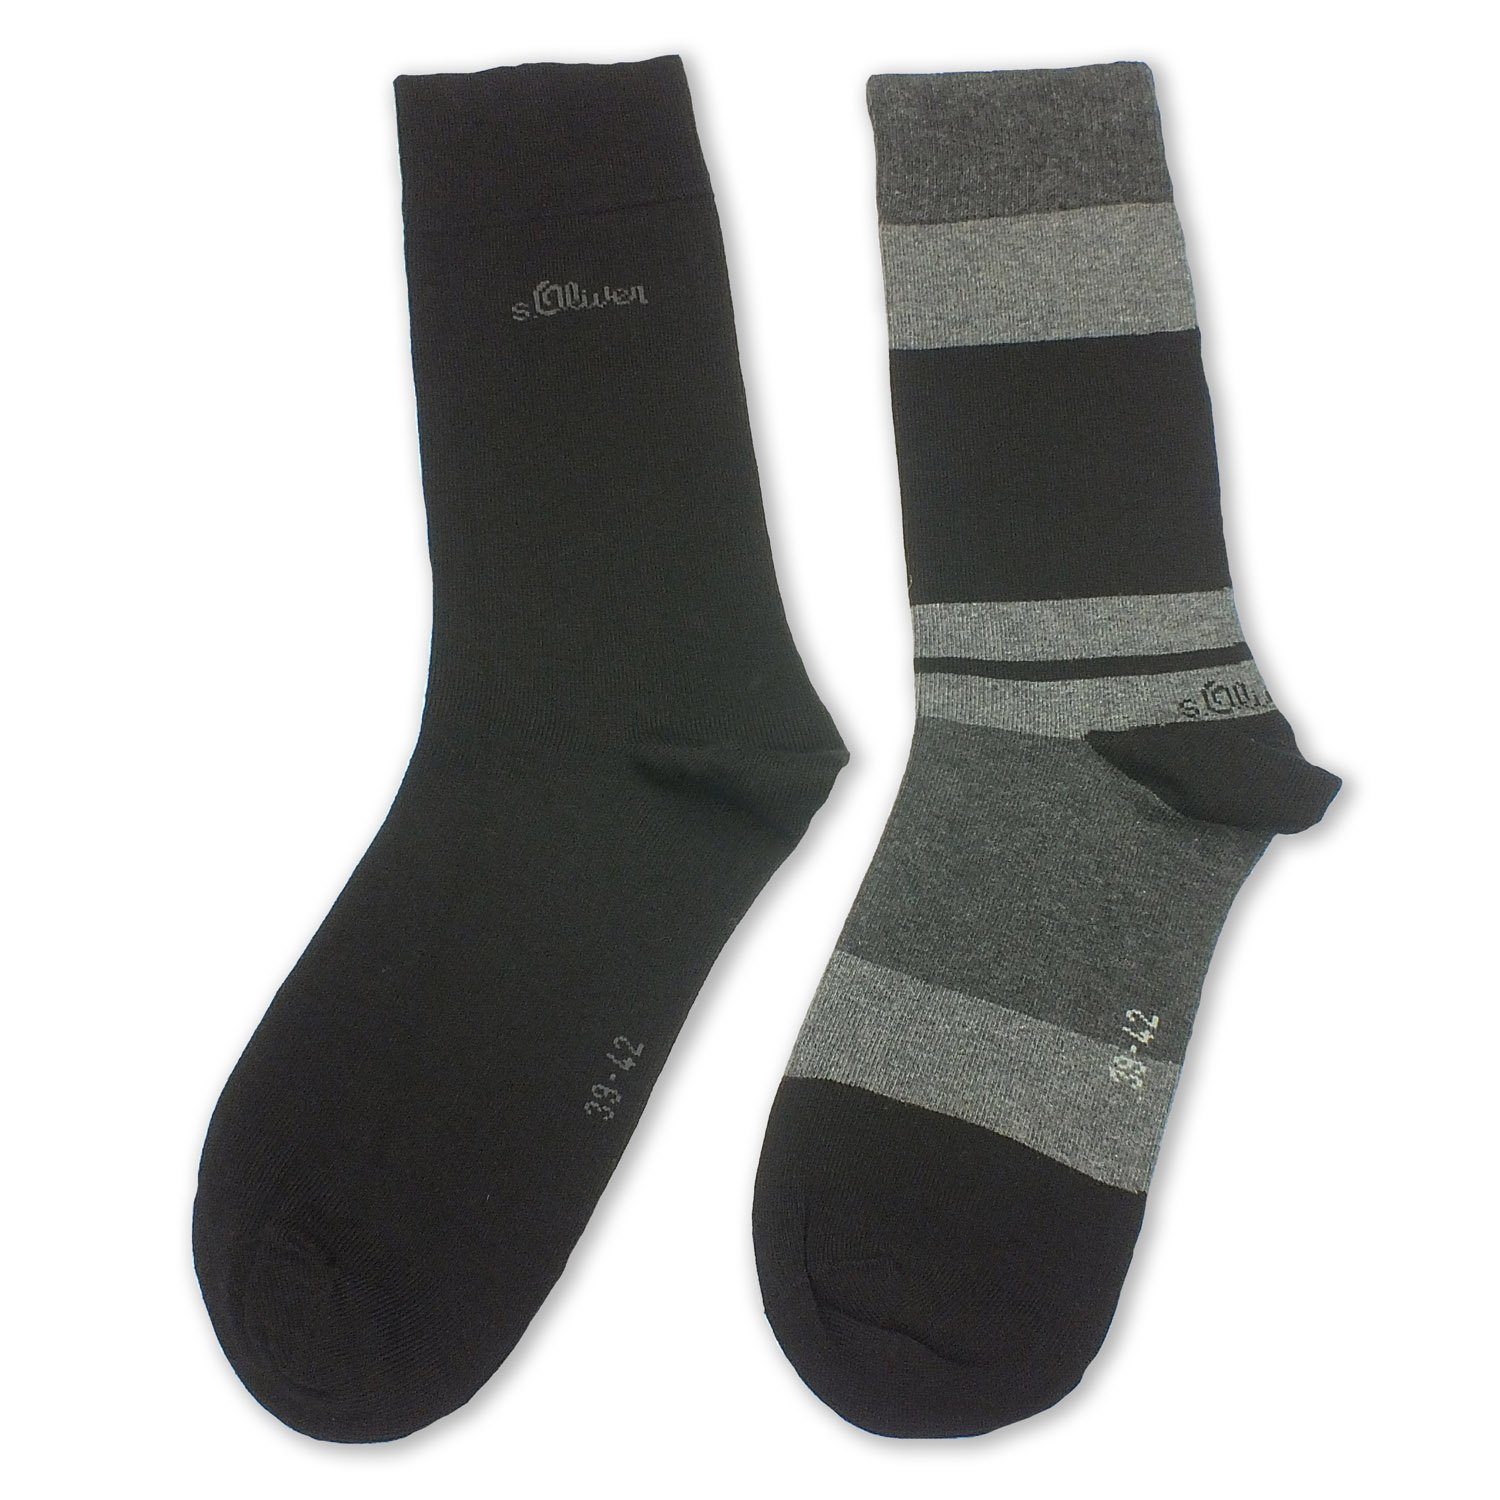 s.Oliver Langsocken S20242 (Packung, 2-Paar, 2 black Paar) Baumwolle Business Herren Socken 05